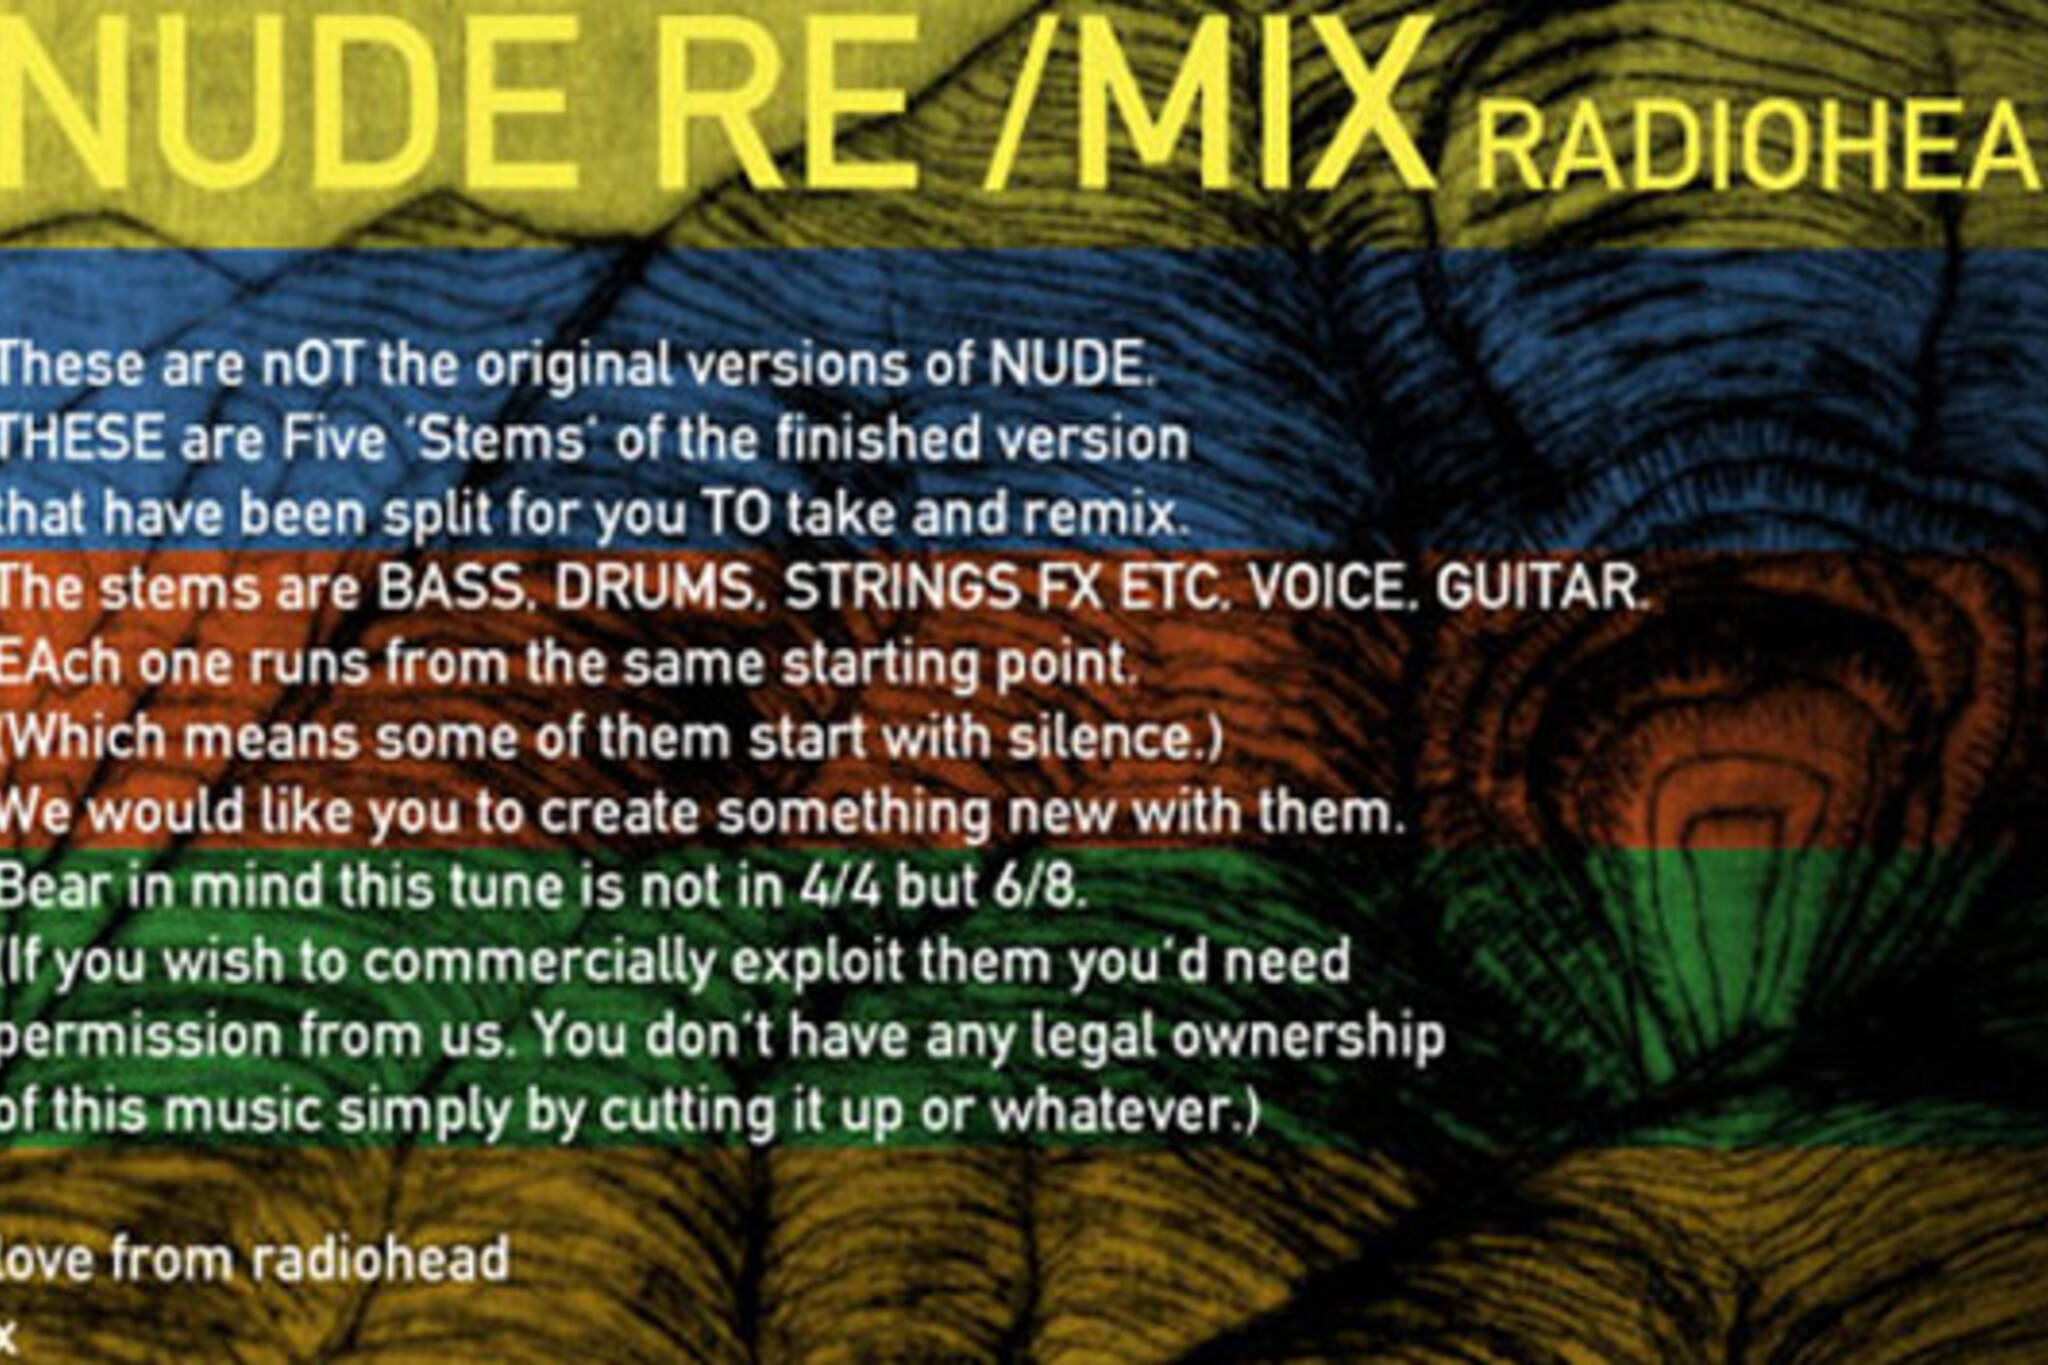 Some of Toronto's Finest Remix Radiohead